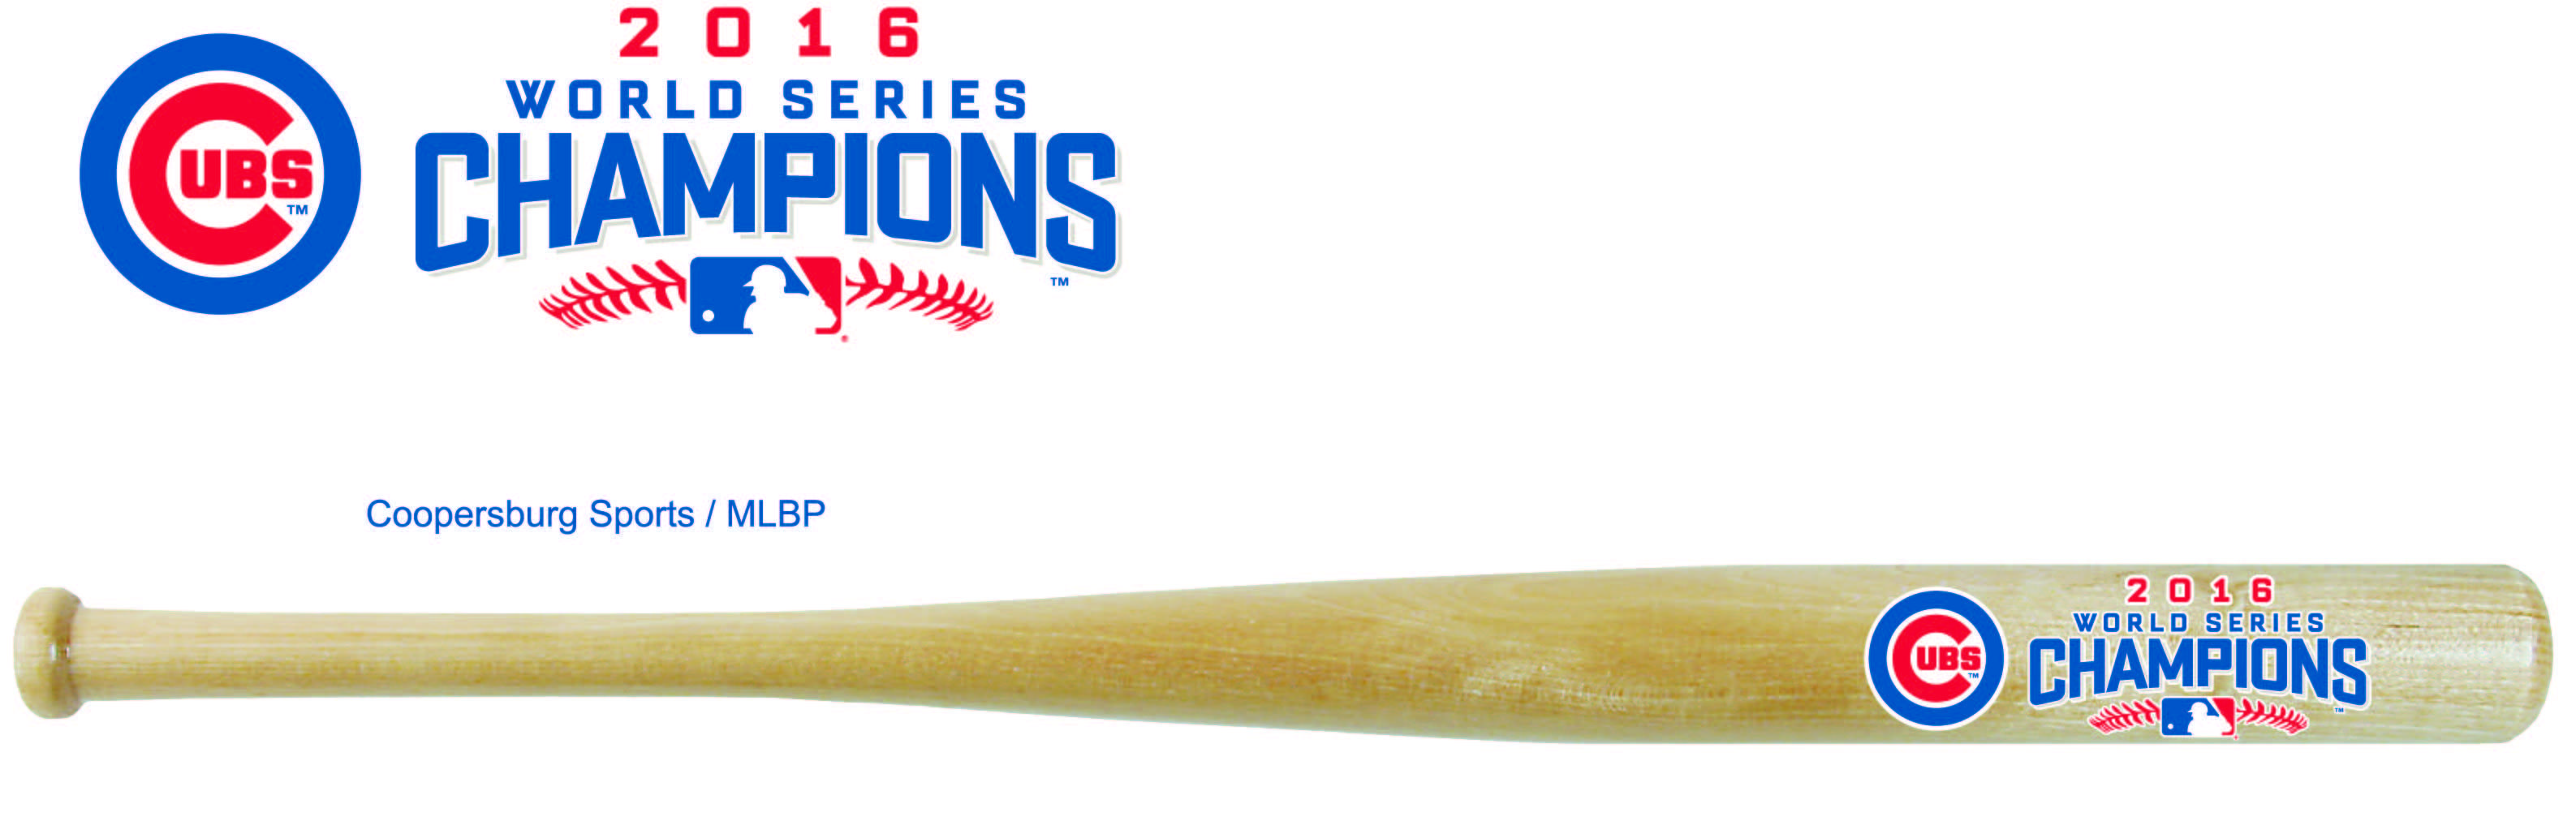 Baseball Bat Team Logo - Chicago Cubs World Series 2016 Champions MLB Natural Wood Baseball